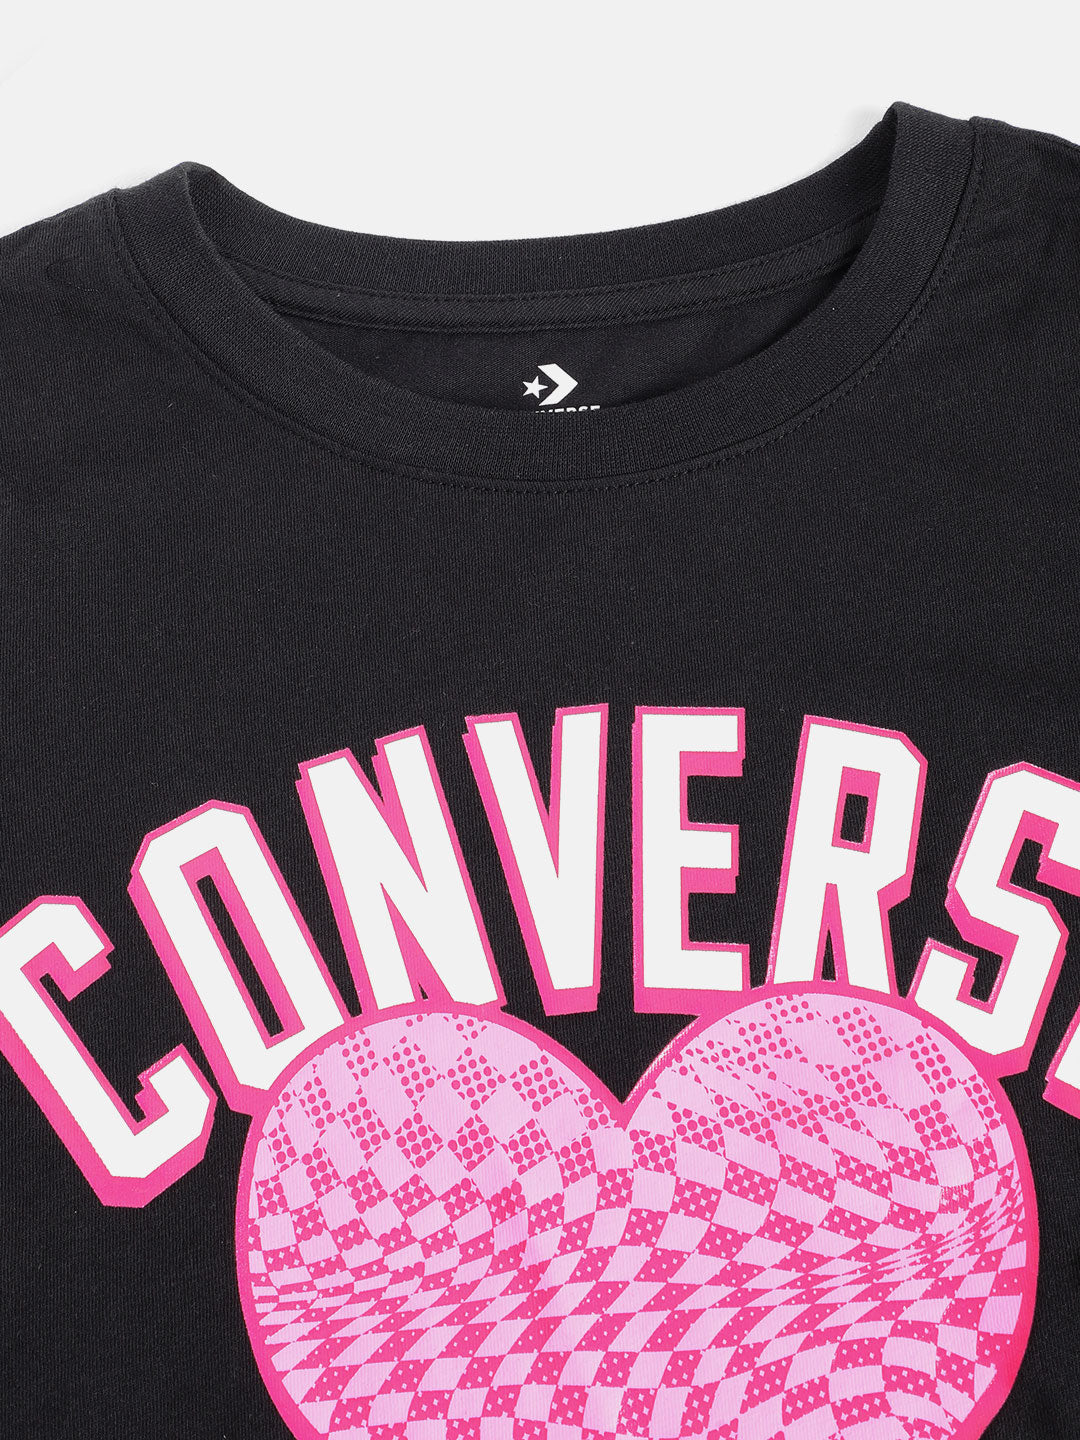 Converse Checkered Heart Long Sleeve T-Shirt T Shirt Converse   